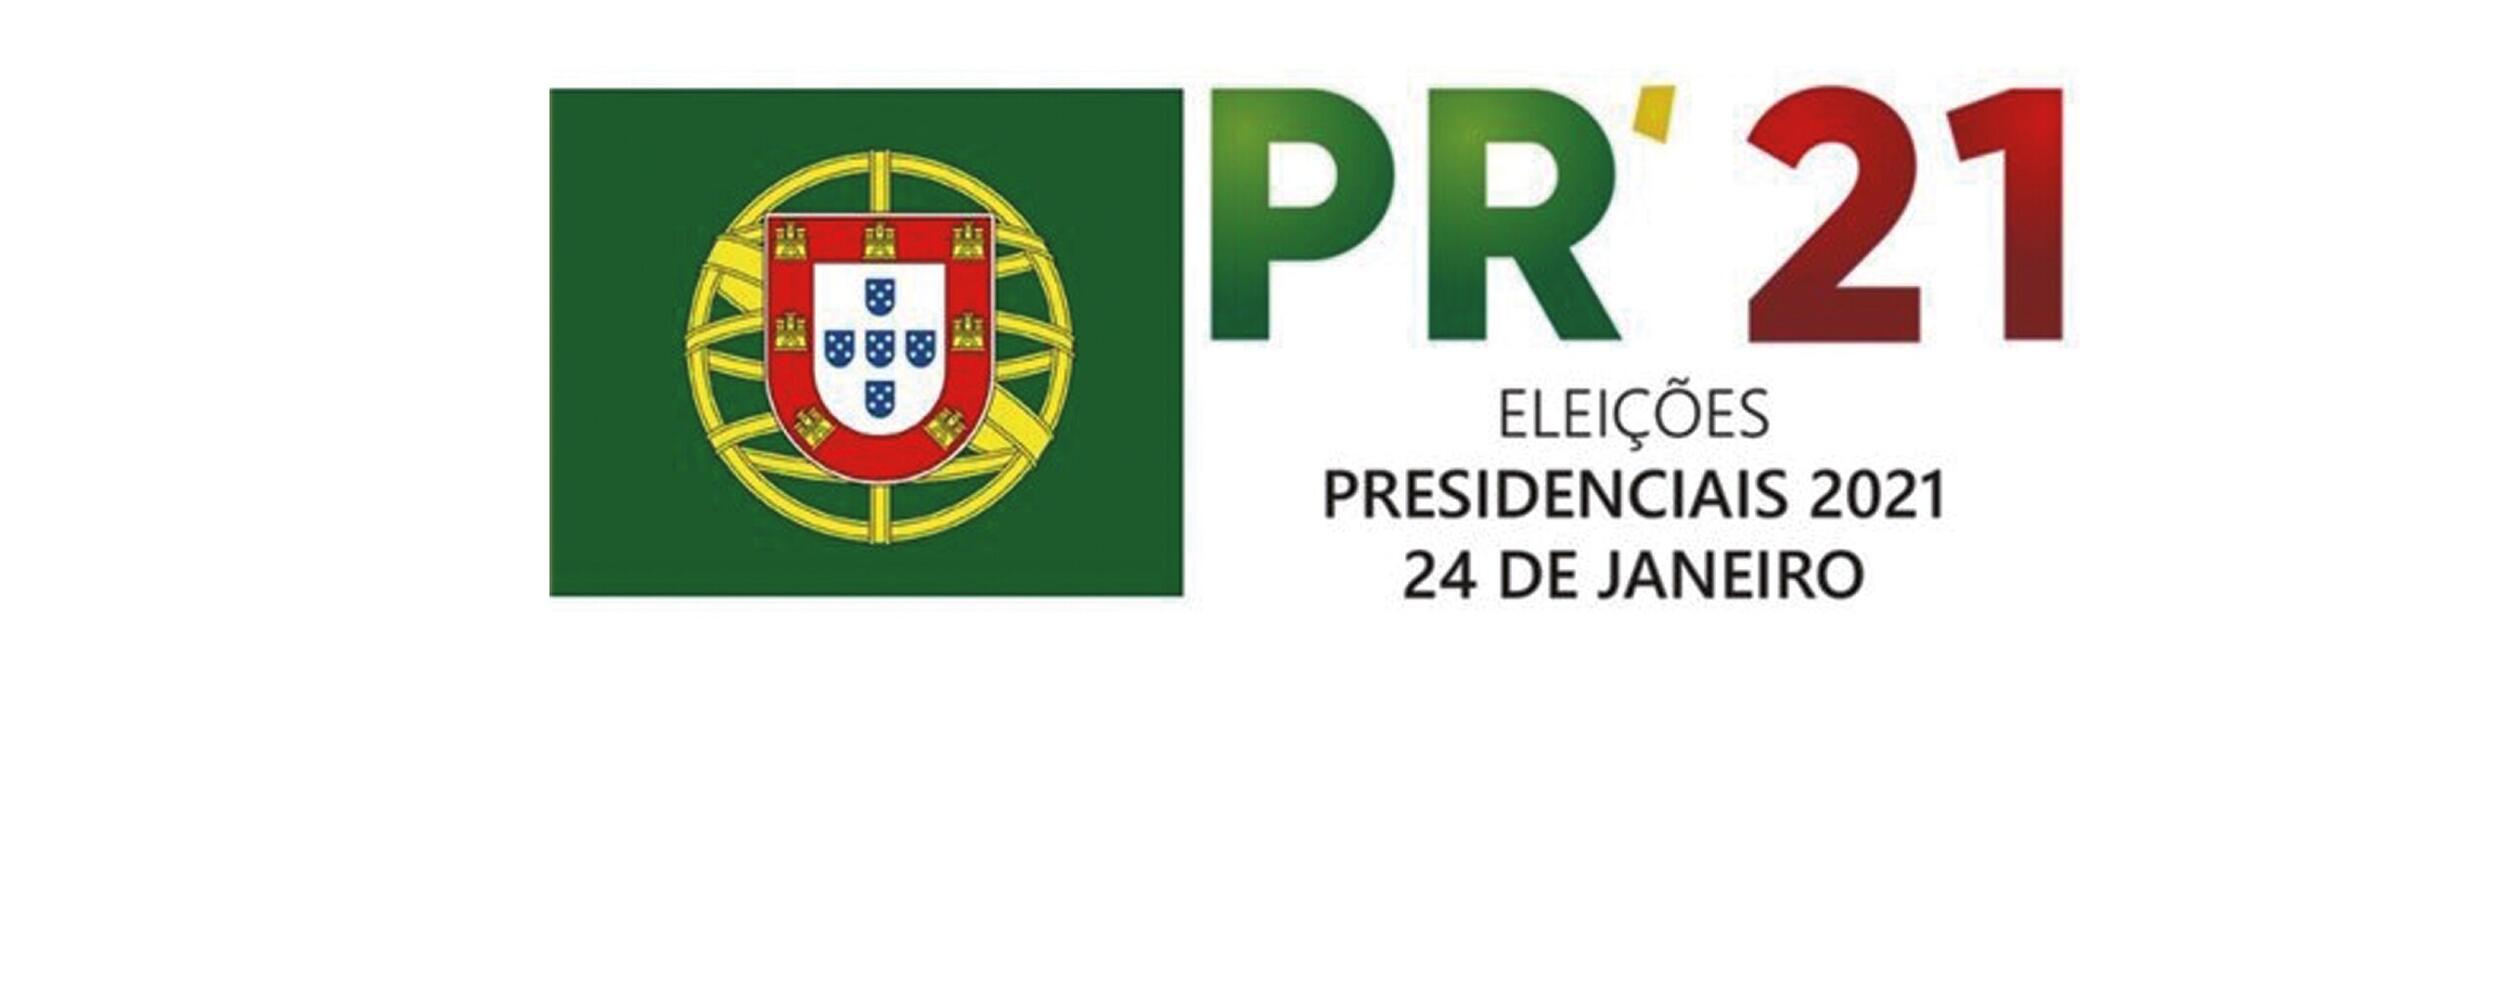 Eleições Presidenciais - 24 de janeiro de 2021